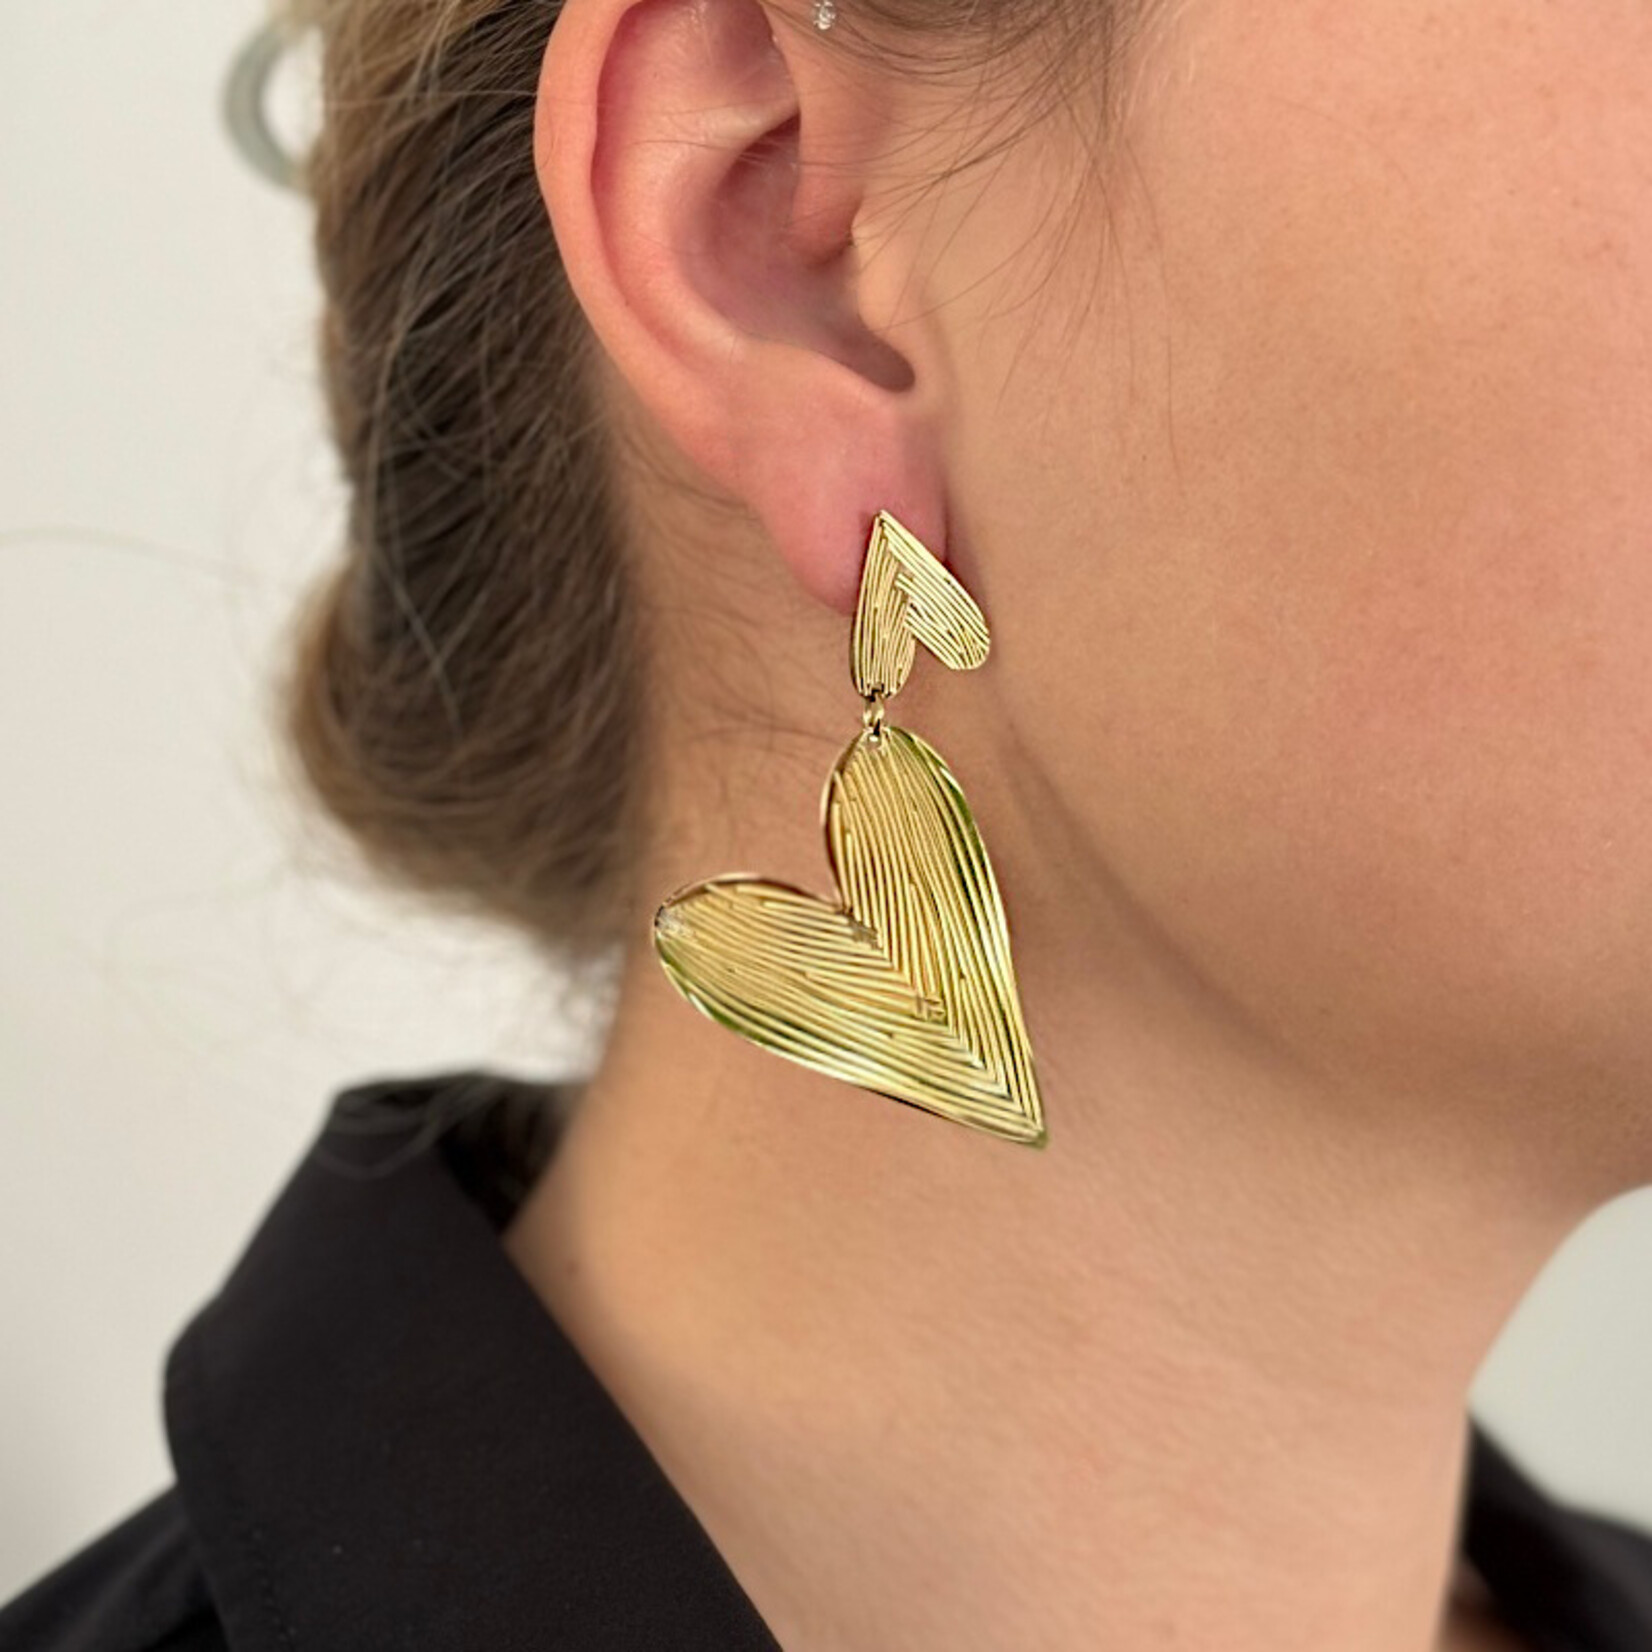 Carriez Stainless steel goudkleurige grote design hartjes oorbellen